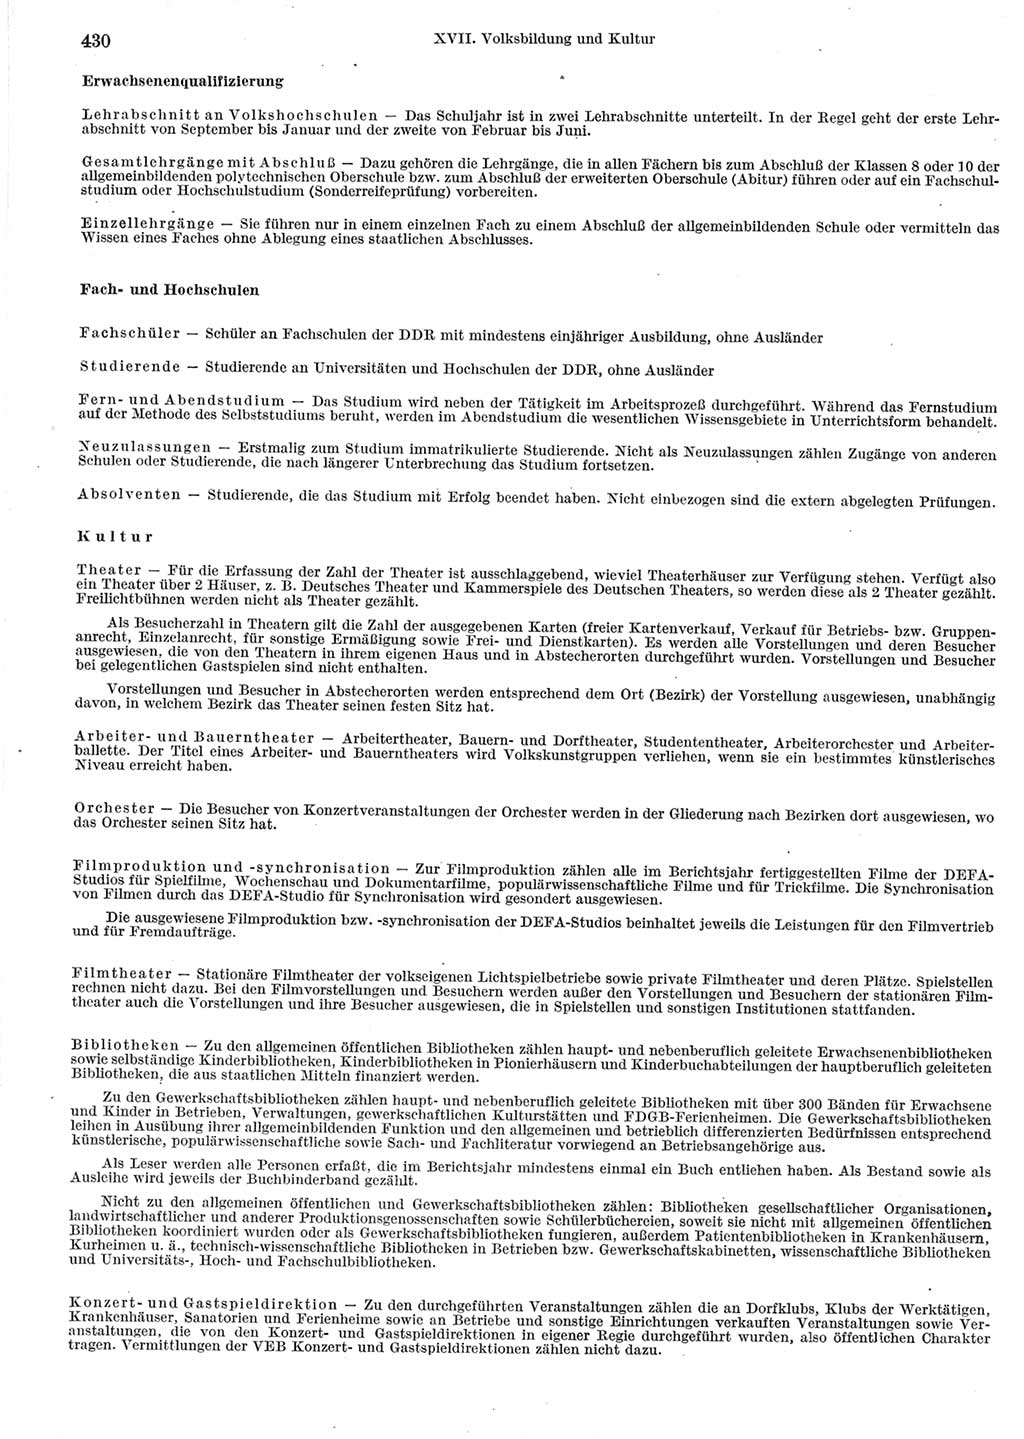 Statistisches Jahrbuch der Deutschen Demokratischen Republik (DDR) 1964, Seite 430 (Stat. Jb. DDR 1964, S. 430)